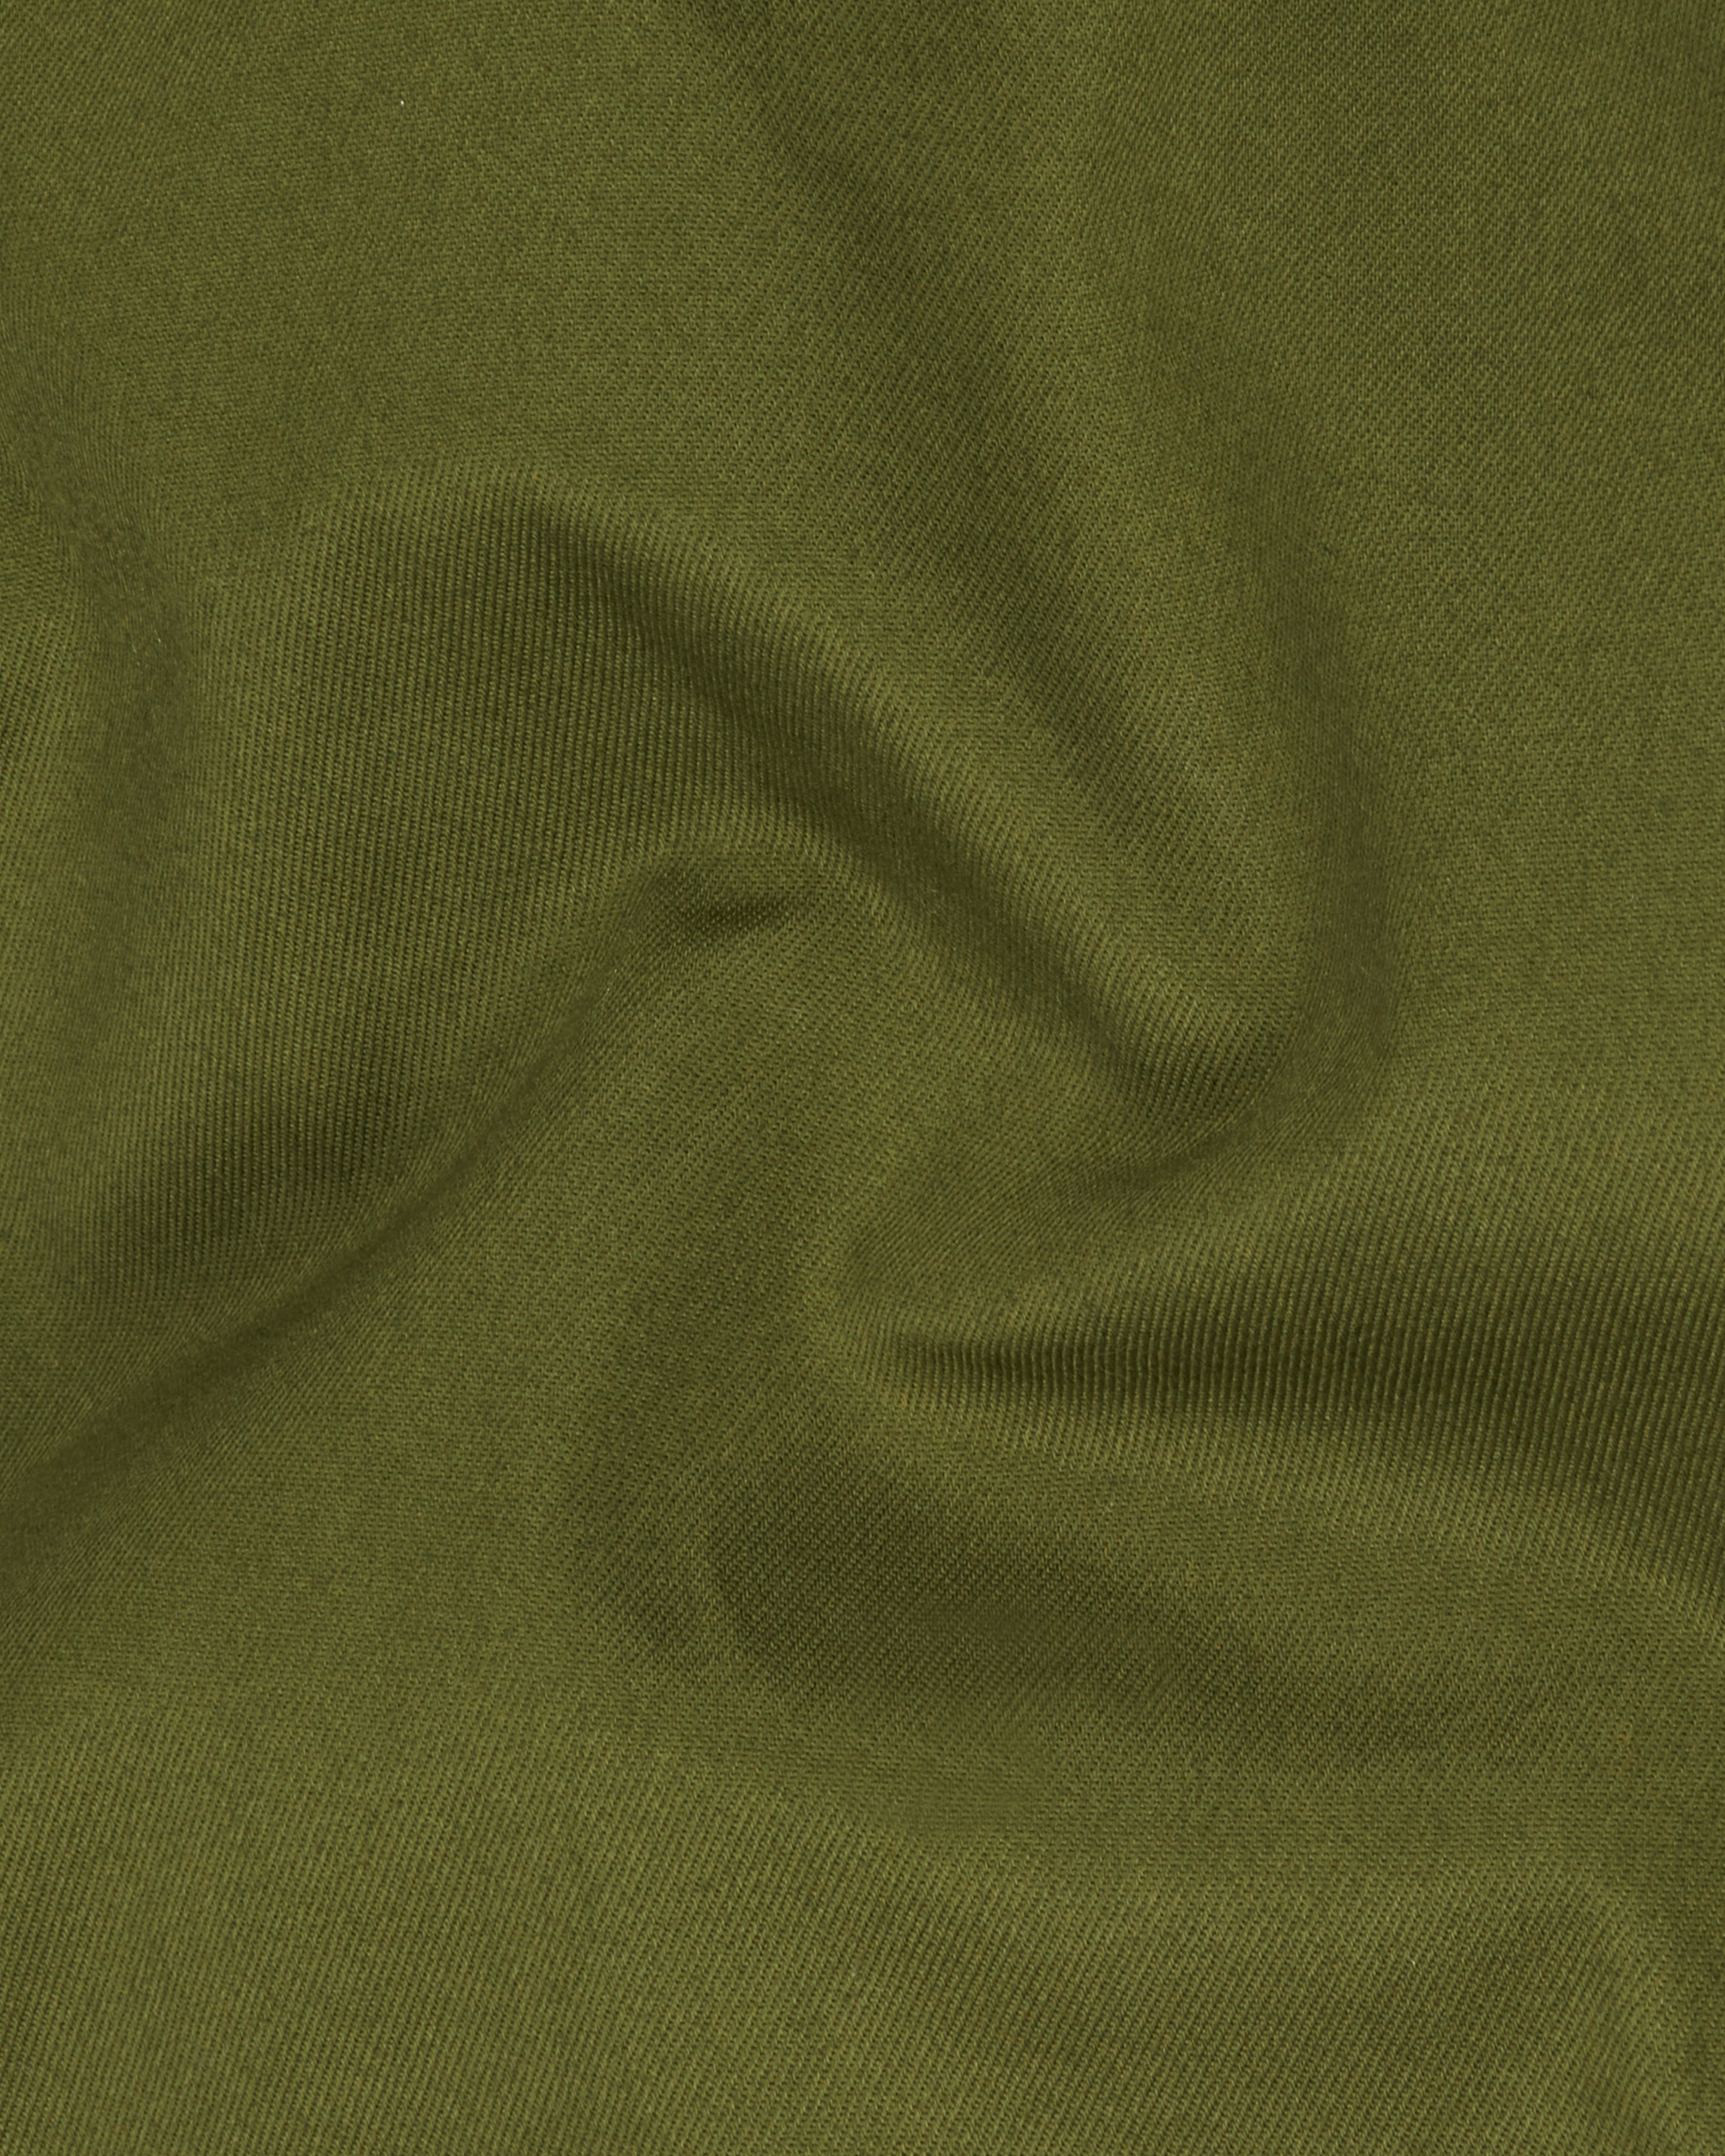 Saratoga Green Premium Cotton Waistcoat V2317-36, V2317-38, V2317-40, V2317-42, V2317-44, V2317-46, V2317-48, V2317-50, V2317-52, V2317-54, V2317-56, V2317-58, V2317-60